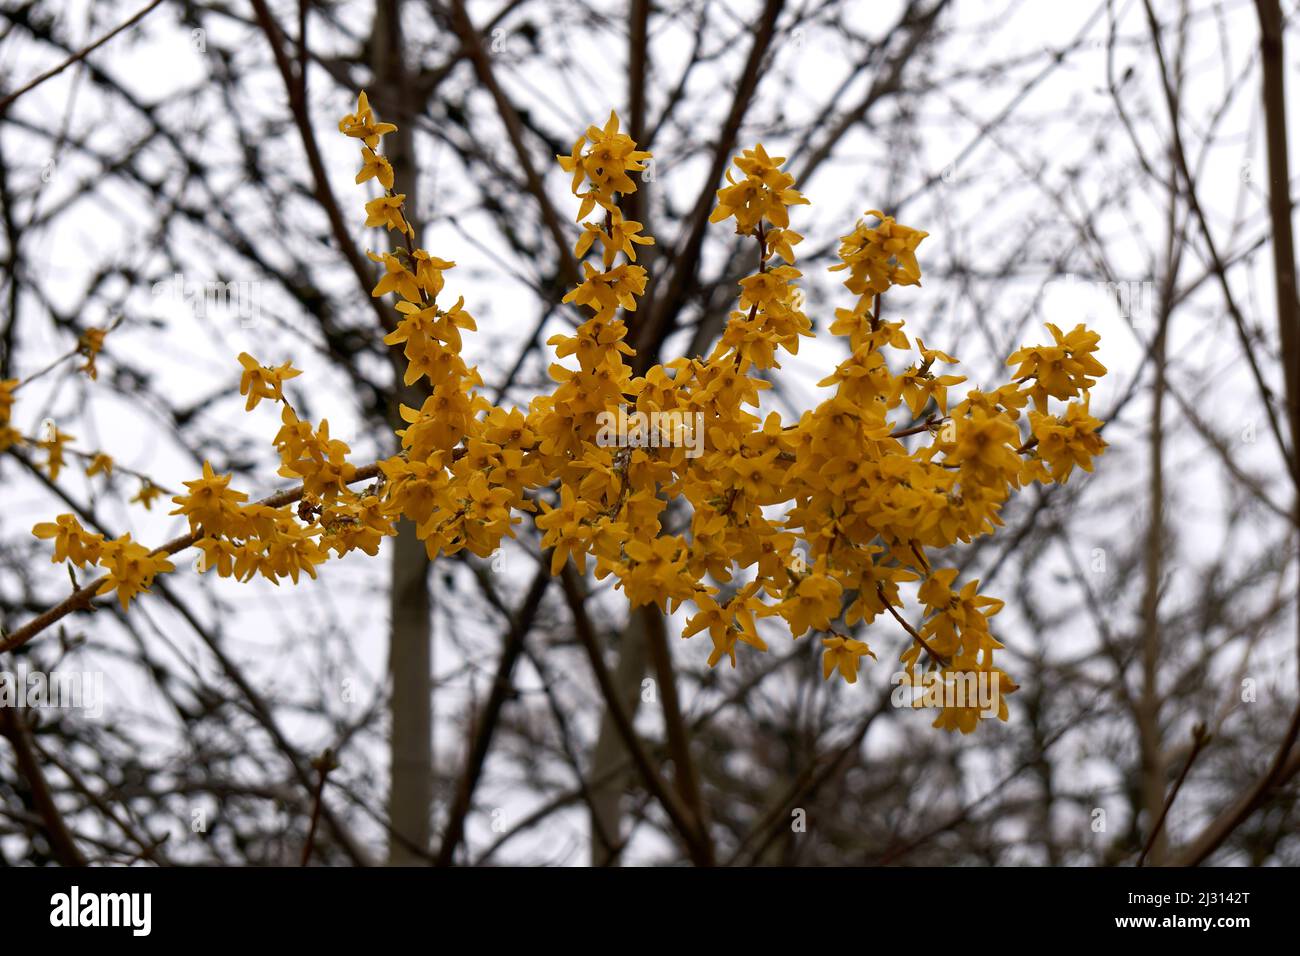 Primer plano de Cytisus scopararius o escoba escocesa común floreciendo en primavera, rama aislada con árboles desnudos en el fondo, Vancouver, BC, Canadá Foto de stock